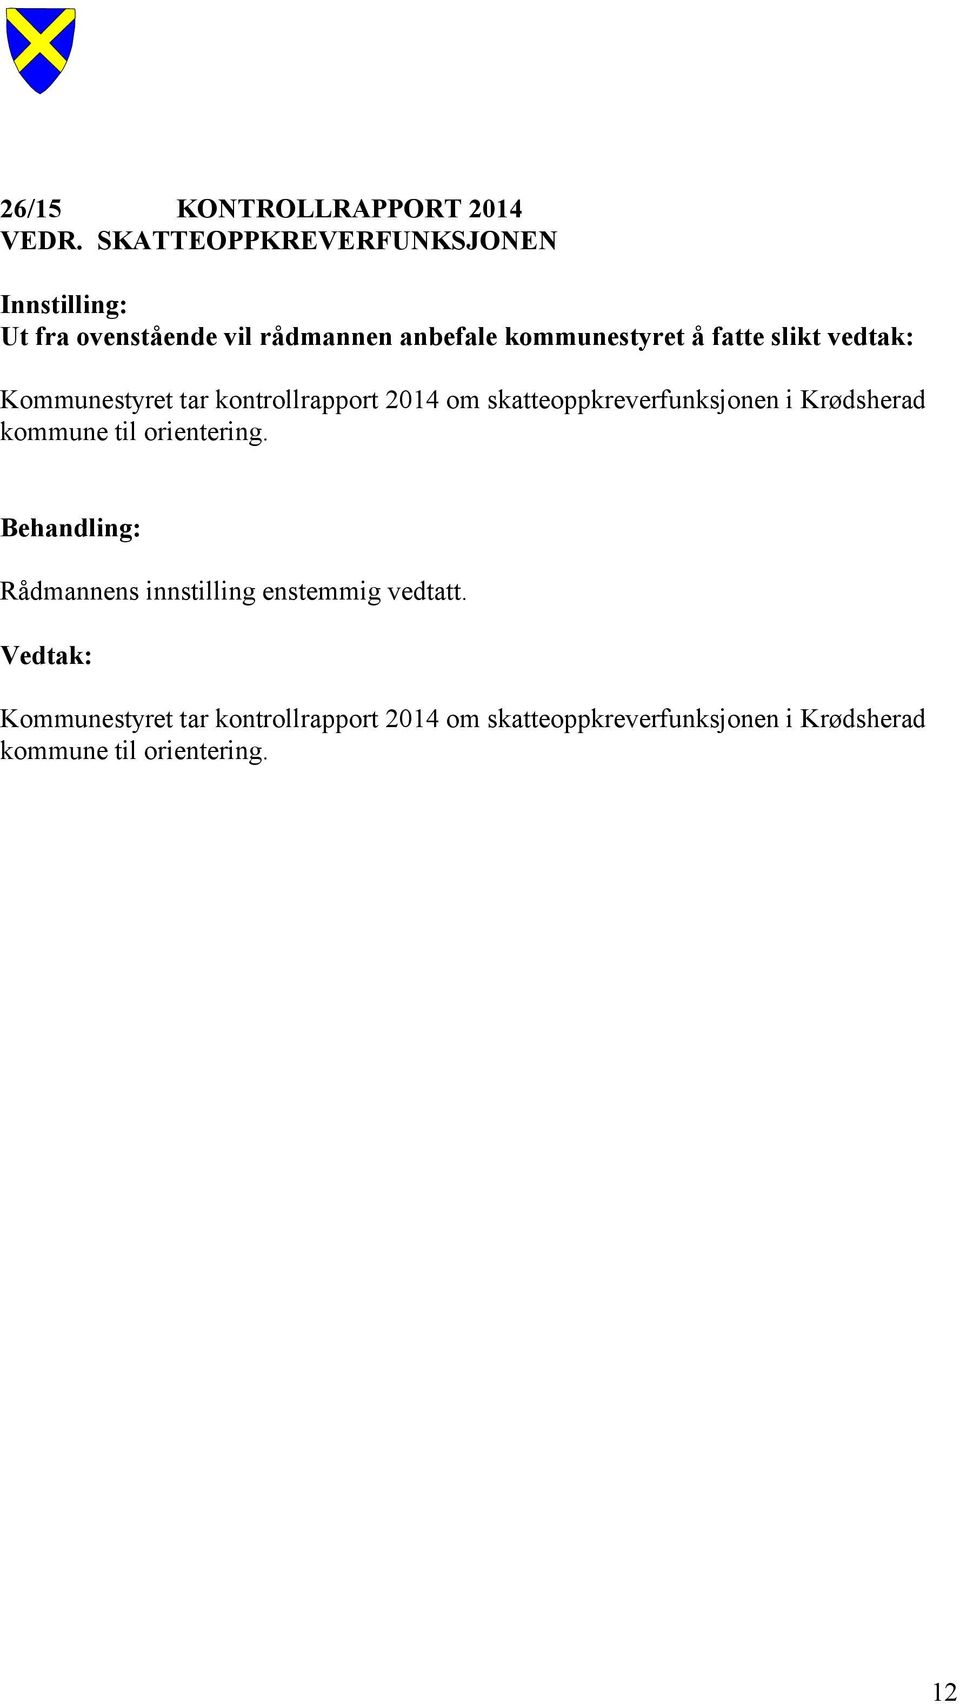 vedtak: Kommunestyret tar kontrollrapport 2014 om skatteoppkreverfunksjonen i Krødsherad kommune